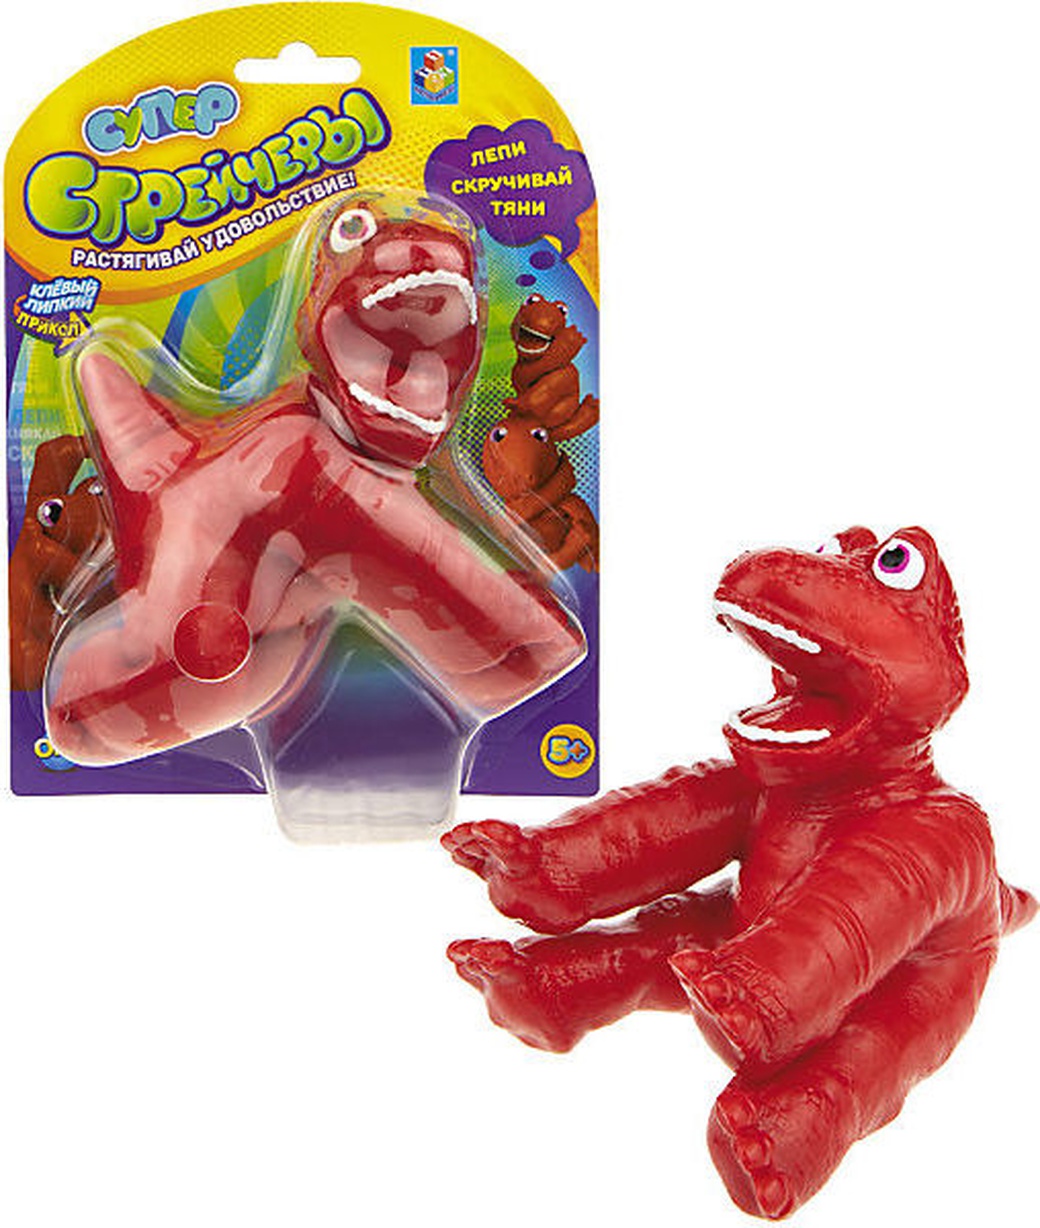 Супер Стрейчеры 1TOY Стикизавр, тянущаяся игрушка, блистер, 11 см, красный Т18660 фото